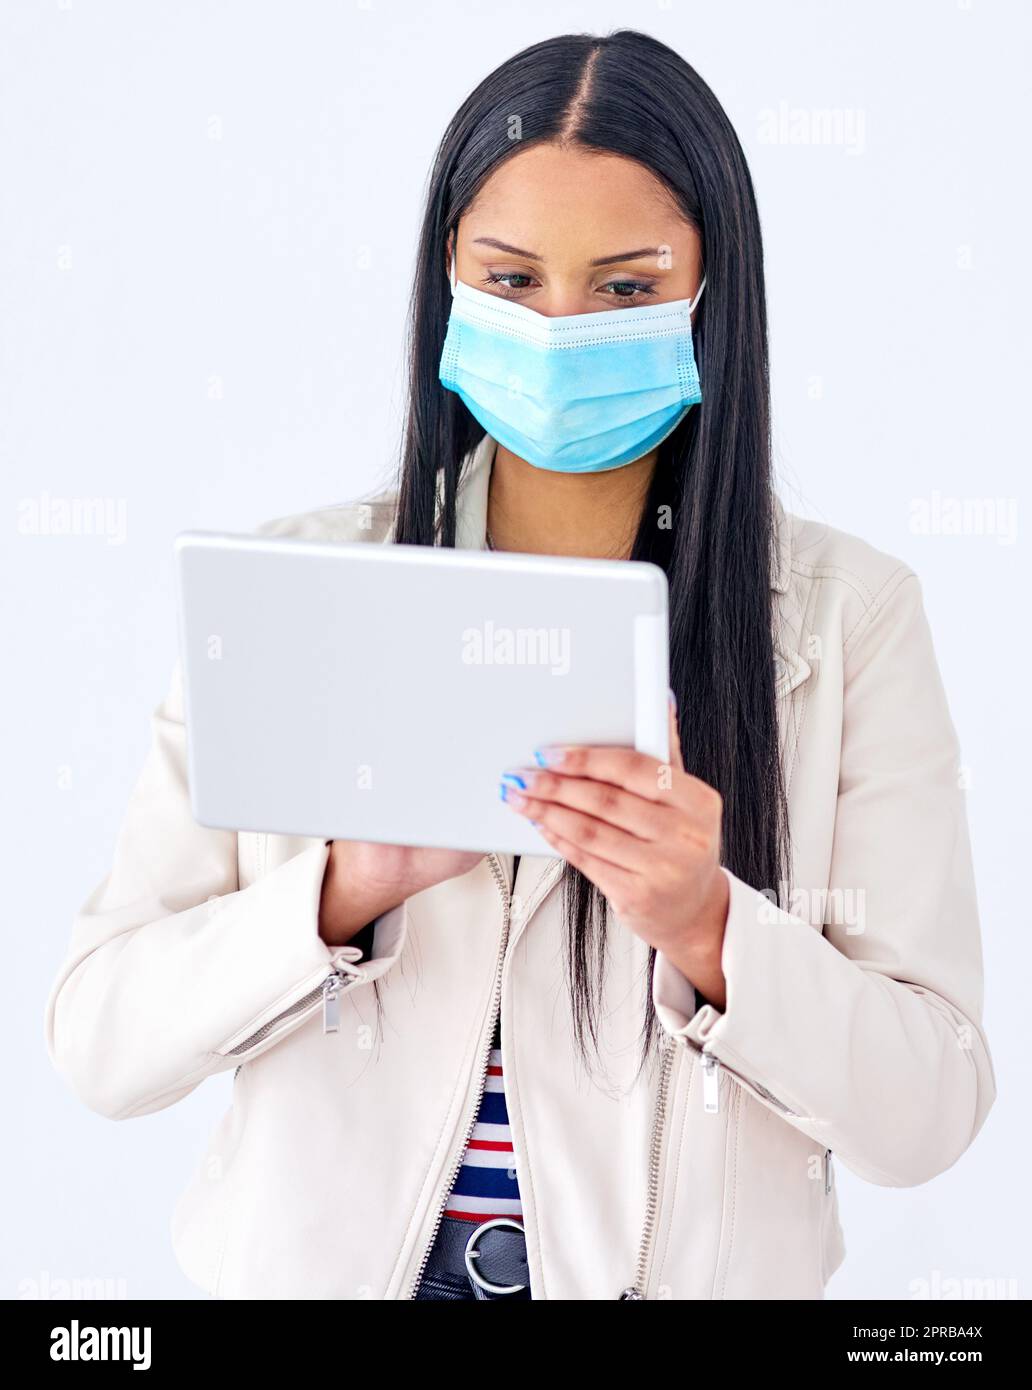 Sfogliare gli aggiornamenti in tempo reale sulla pandemia. Studio girato di una giovane donna che indossa una maschera e usando un tablet digitale su sfondo bianco. Foto Stock